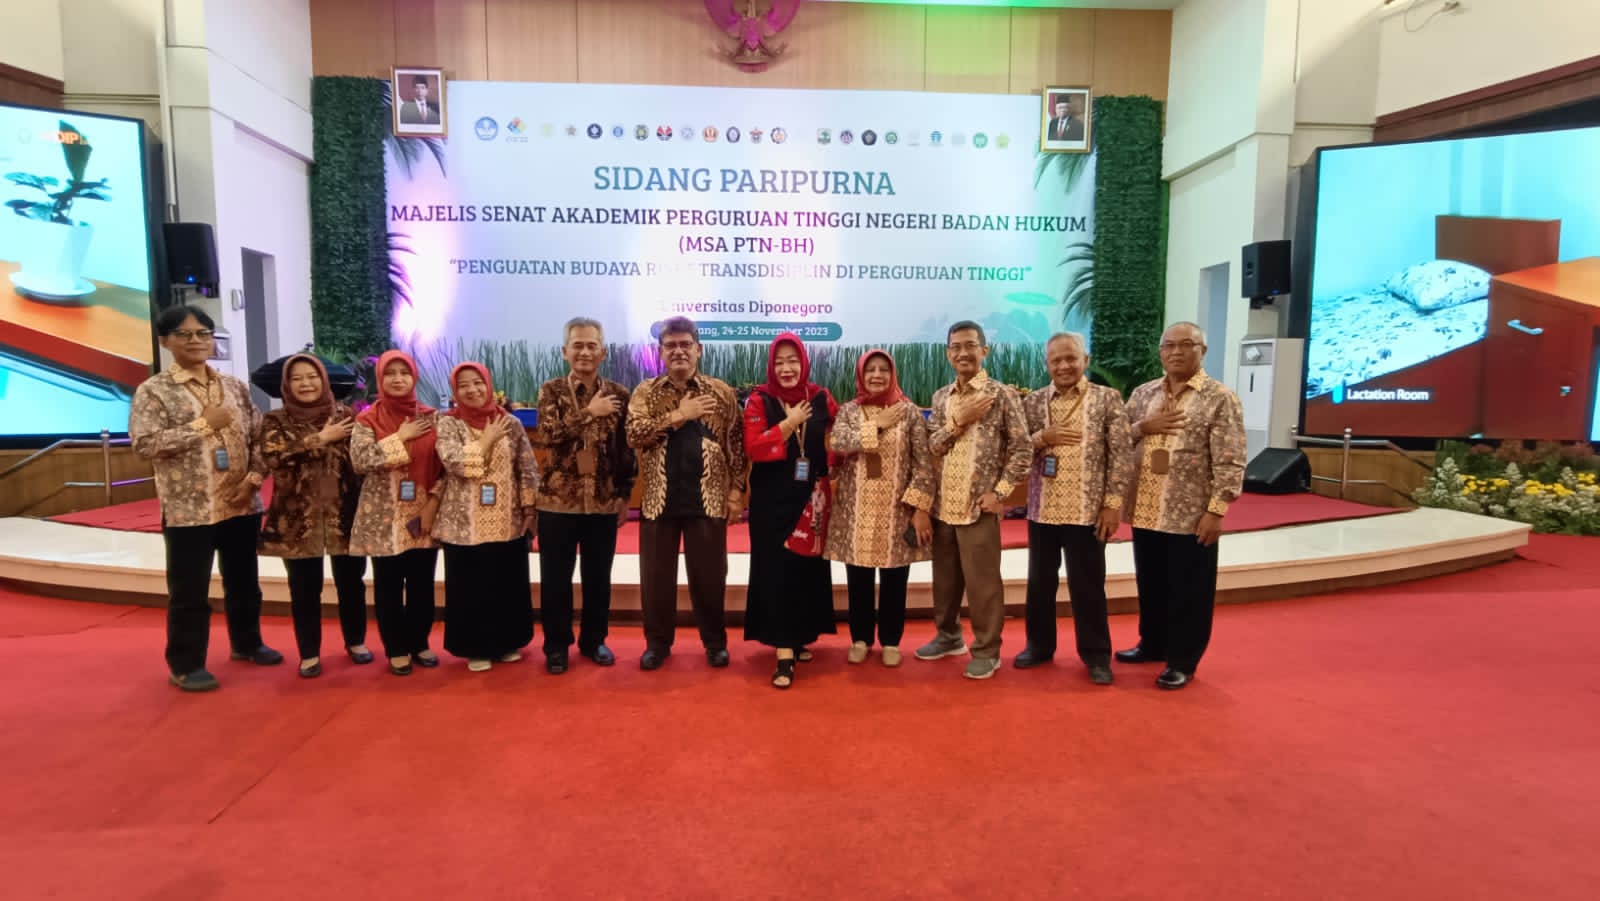 Sidang Majelis Senat Akademik PTN-BH “Penguatan Budaya Riset Transdisiplin di Perguruan Tinggi Indonesia” pada 24-25 Desember 2023 di Universitas Diponegoro Semarang